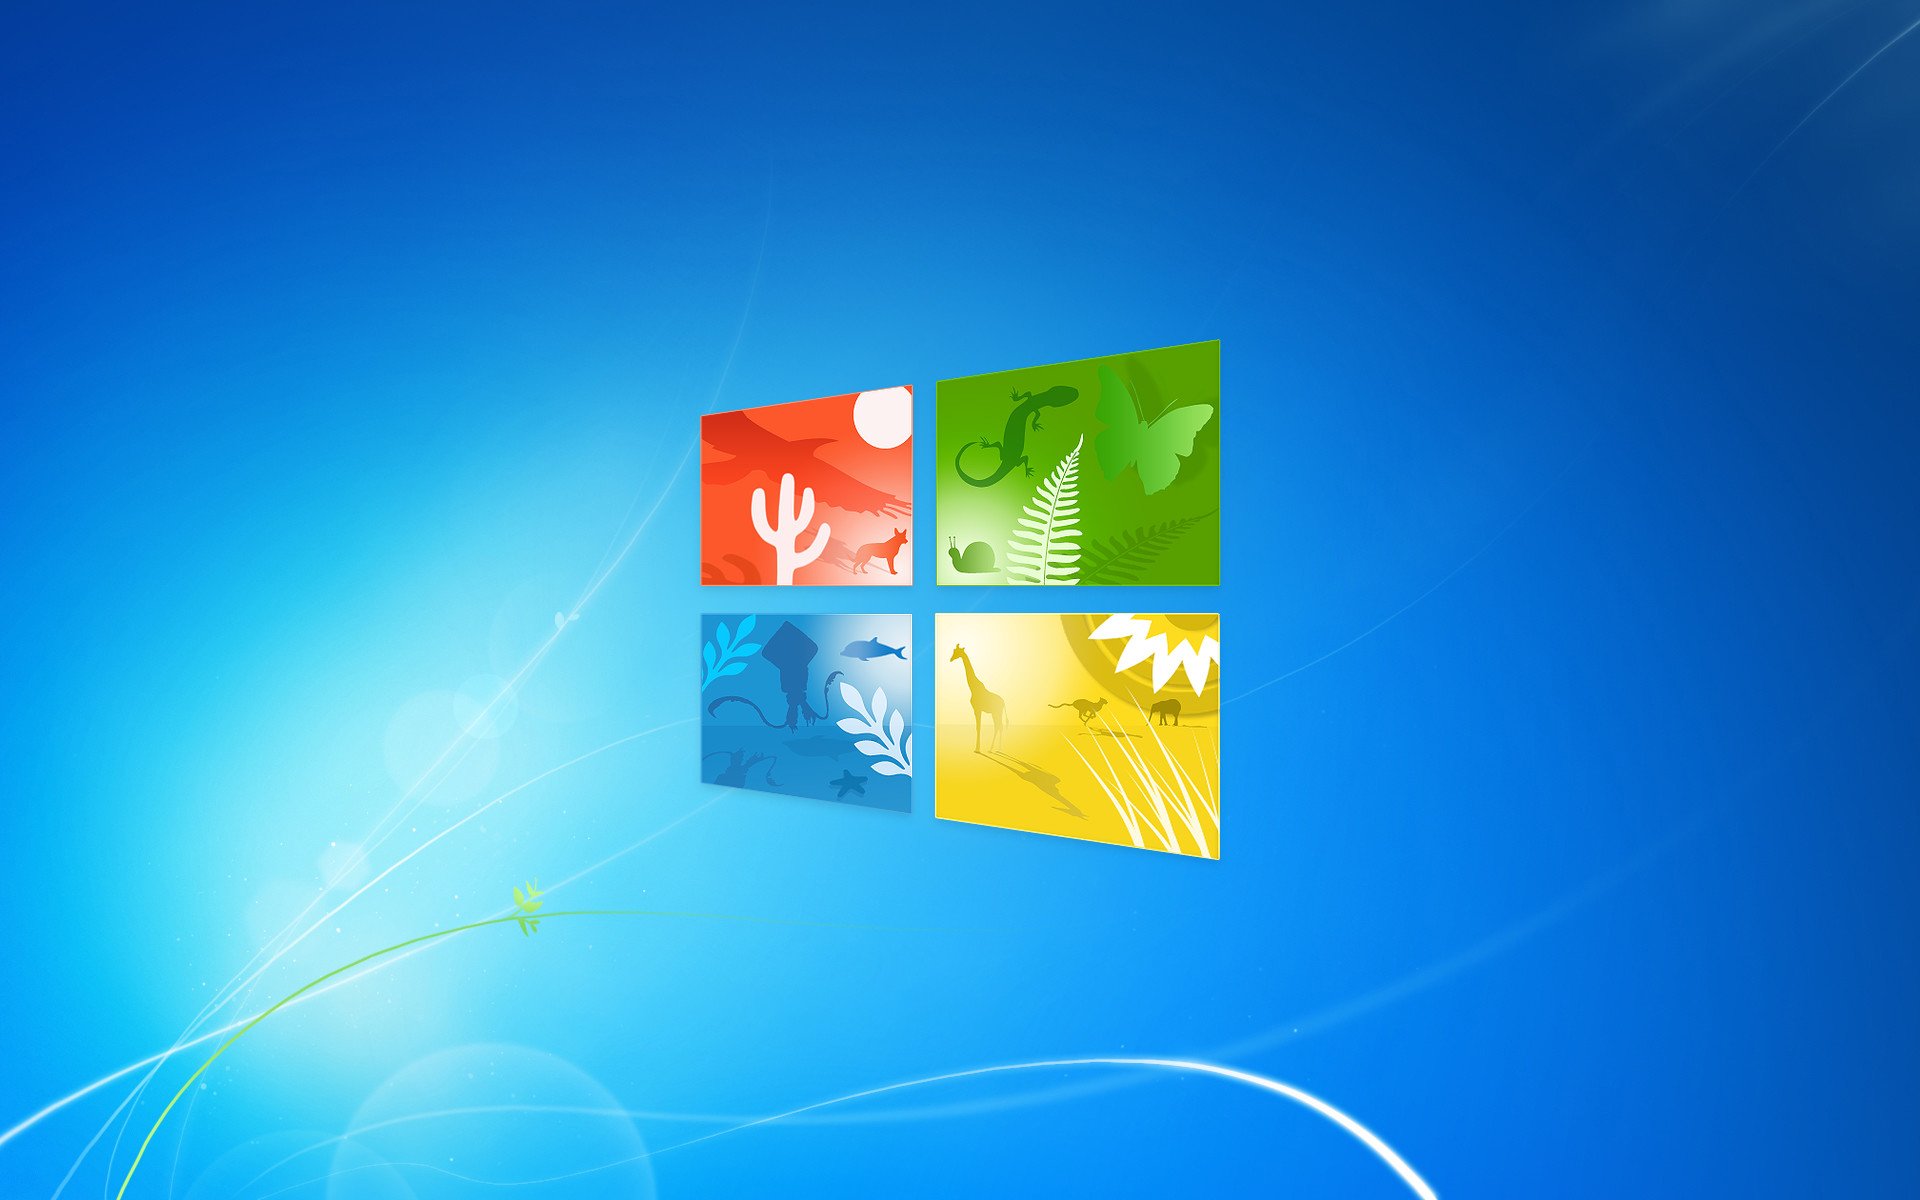 Экран Windows 7